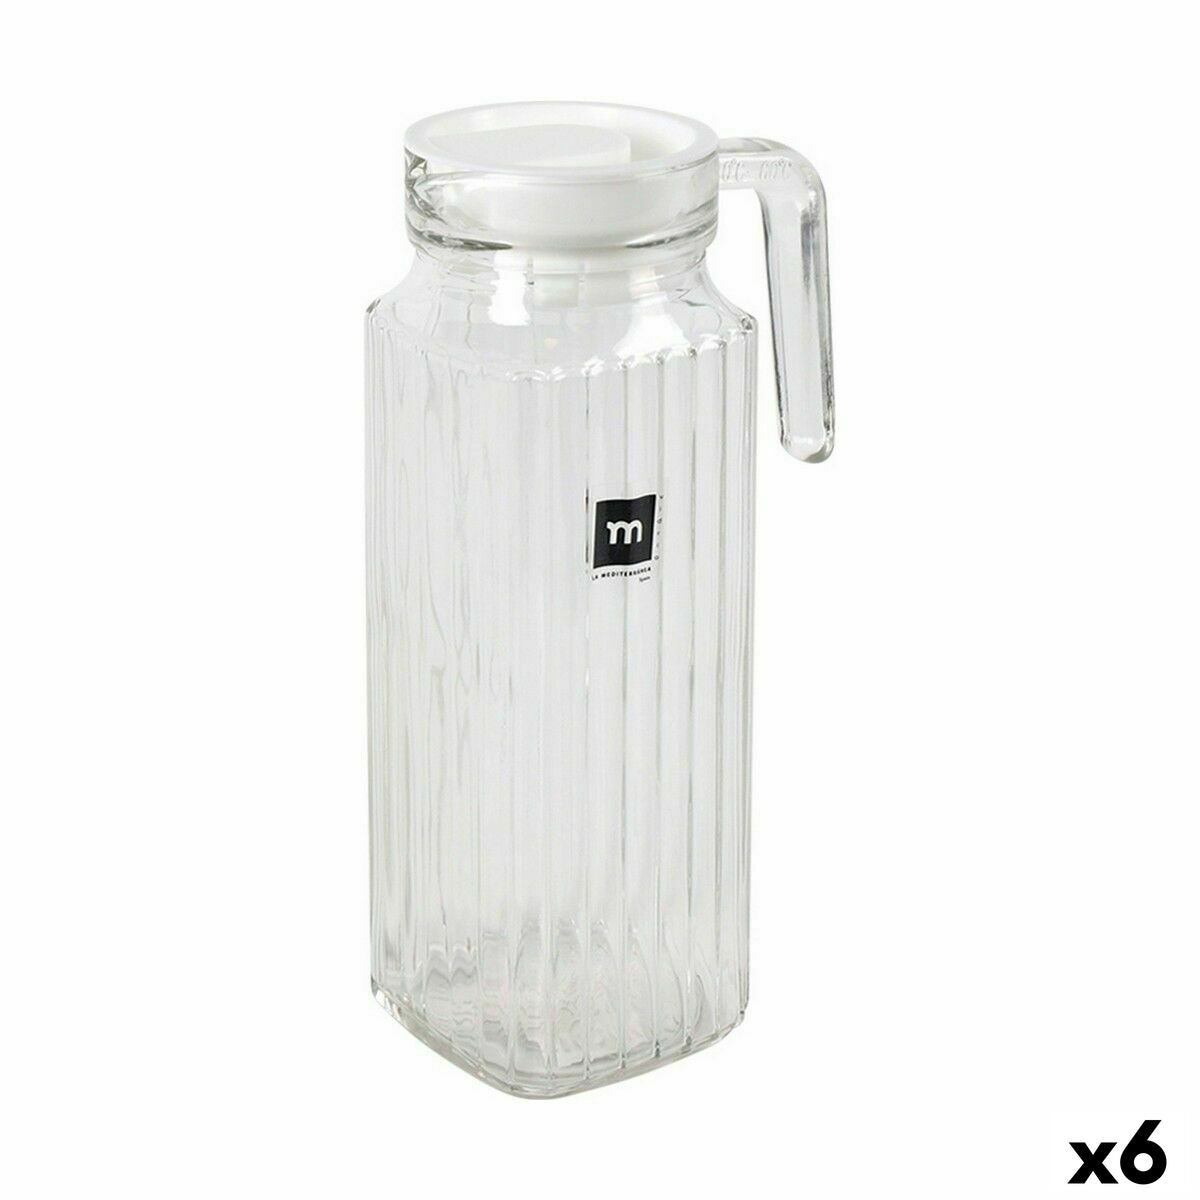 Jar with Lid and Dosage Dispenser La Mediterránea Chrysler 1 L Glass (6 Units)